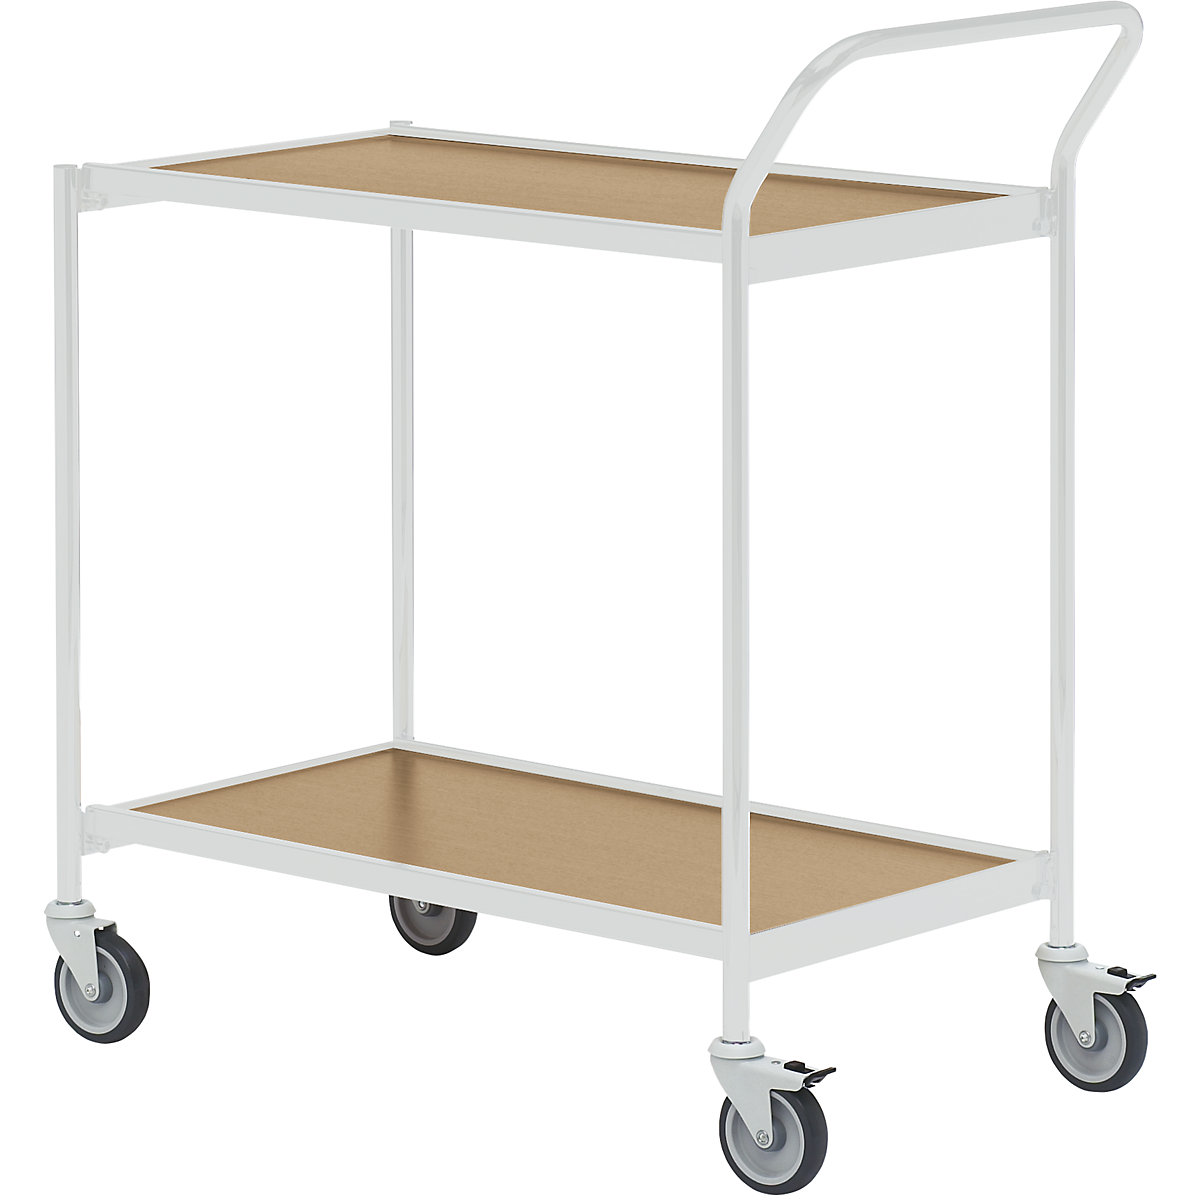 Stolový vozík – HelgeNyberg, 2 etáže, d x š 800 x 420 mm, šedá / dub, od 5 ks-14